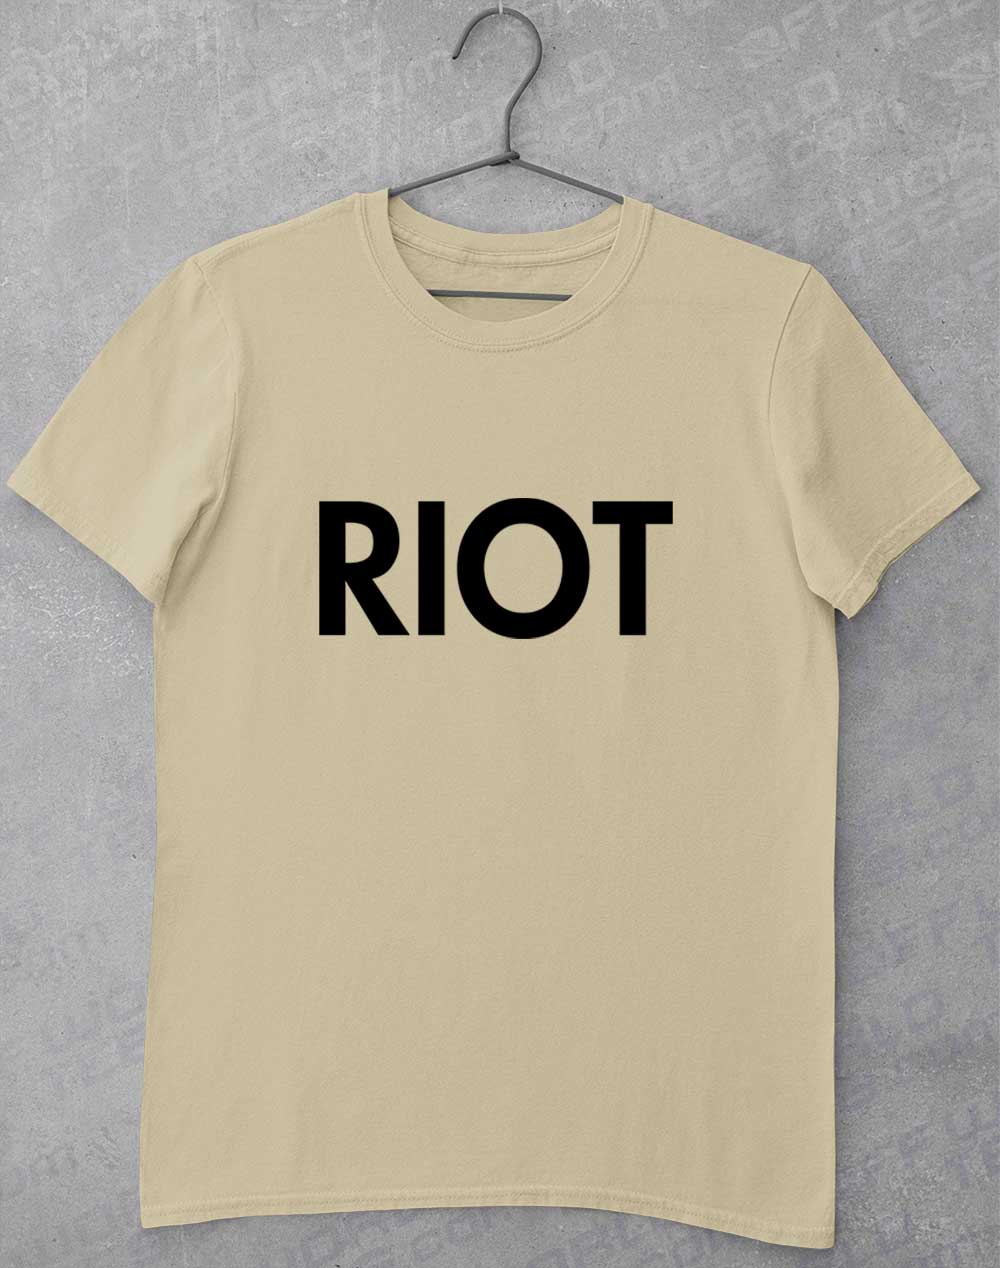 Sand - Mac's Riot T-Shirt